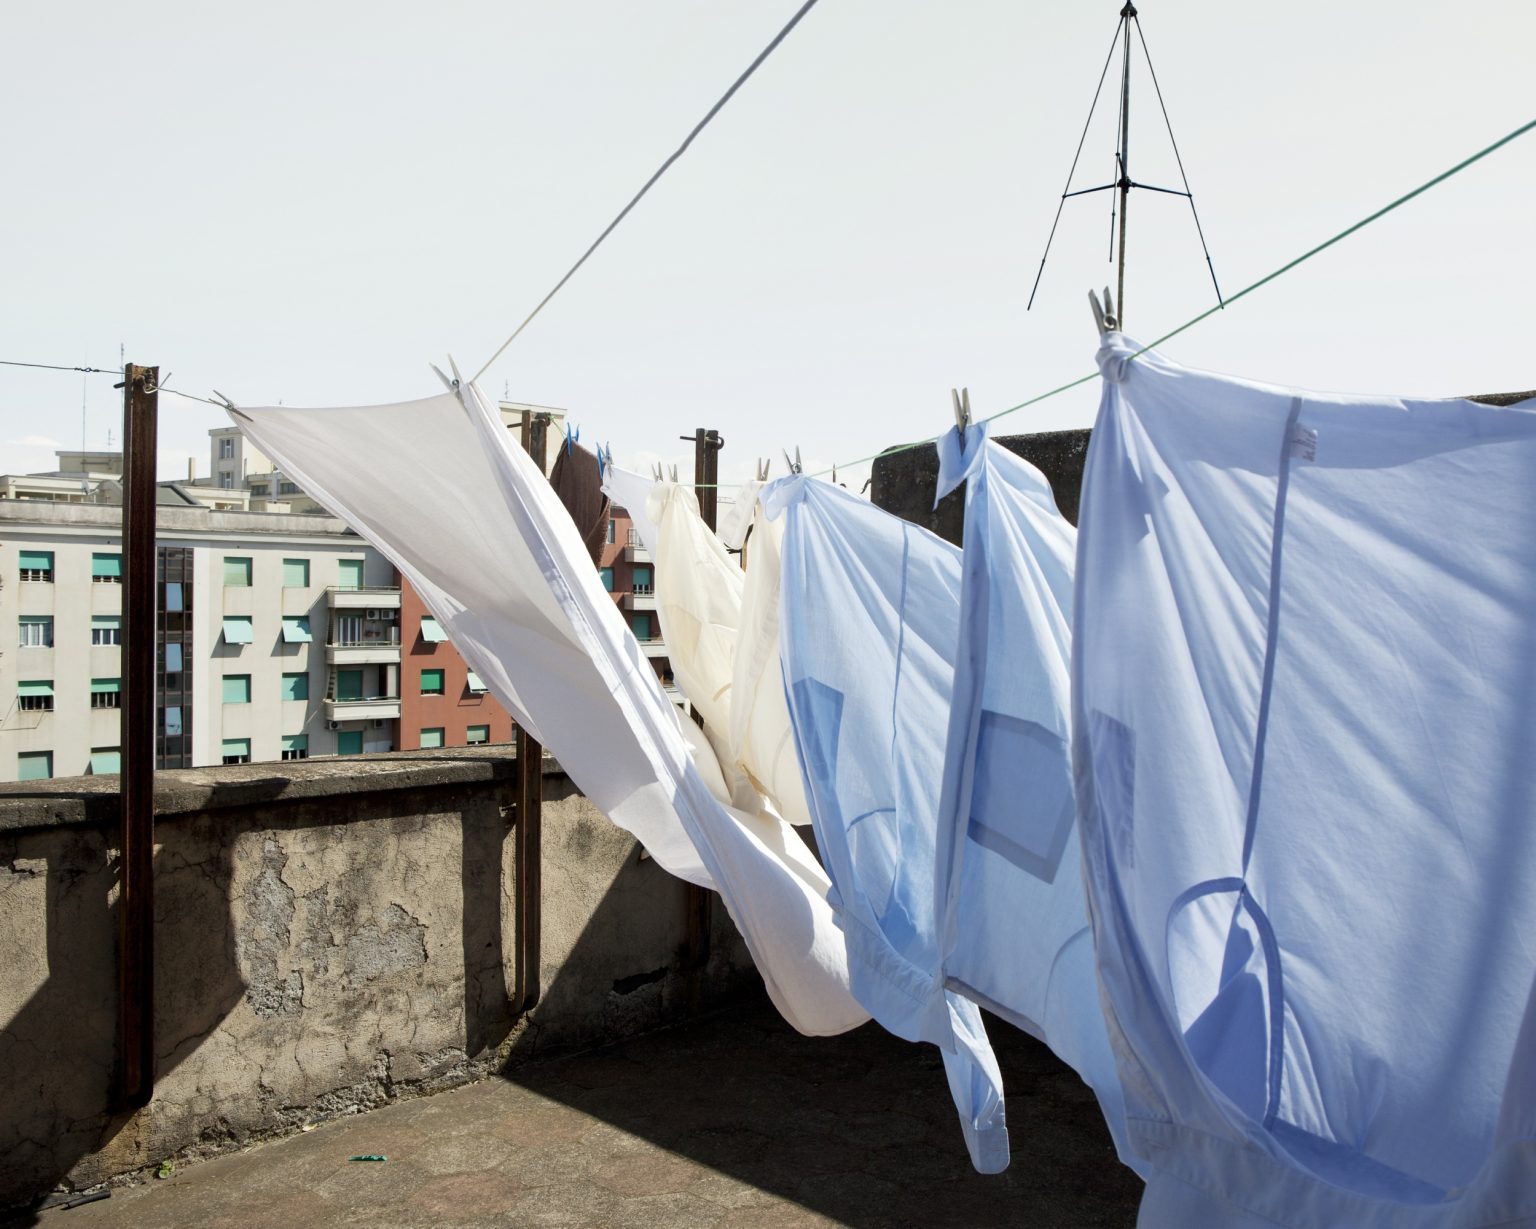 Rome, March 2015 - Pigneto district, laundry hanging in the sun on the communal terrace.
><
Roma, marzo 2015 - Pigneto, bucato steso al sole nella terrazza condominiale.